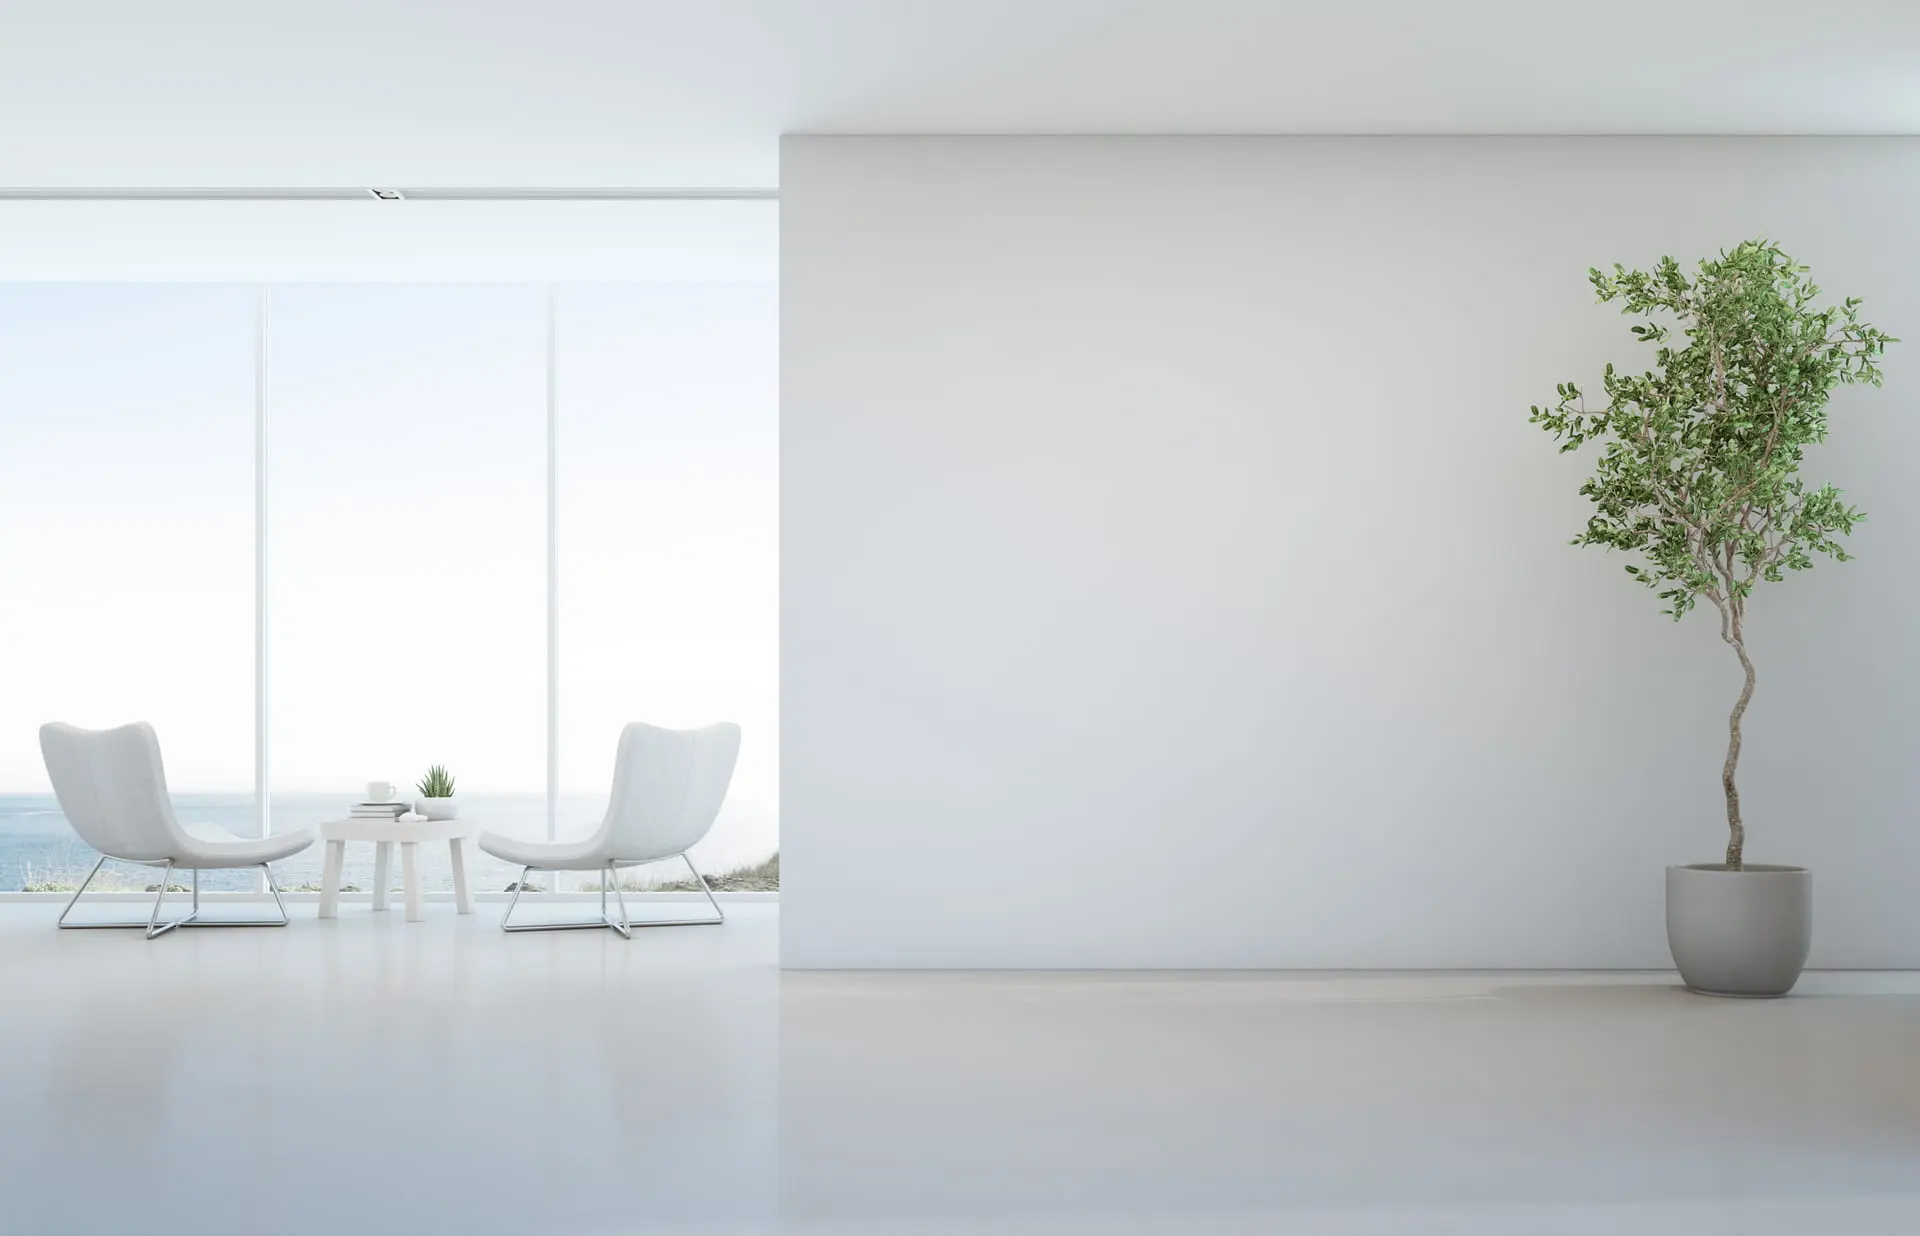 Wohnzimmer im minimalistischen Stil in hellen Tönen